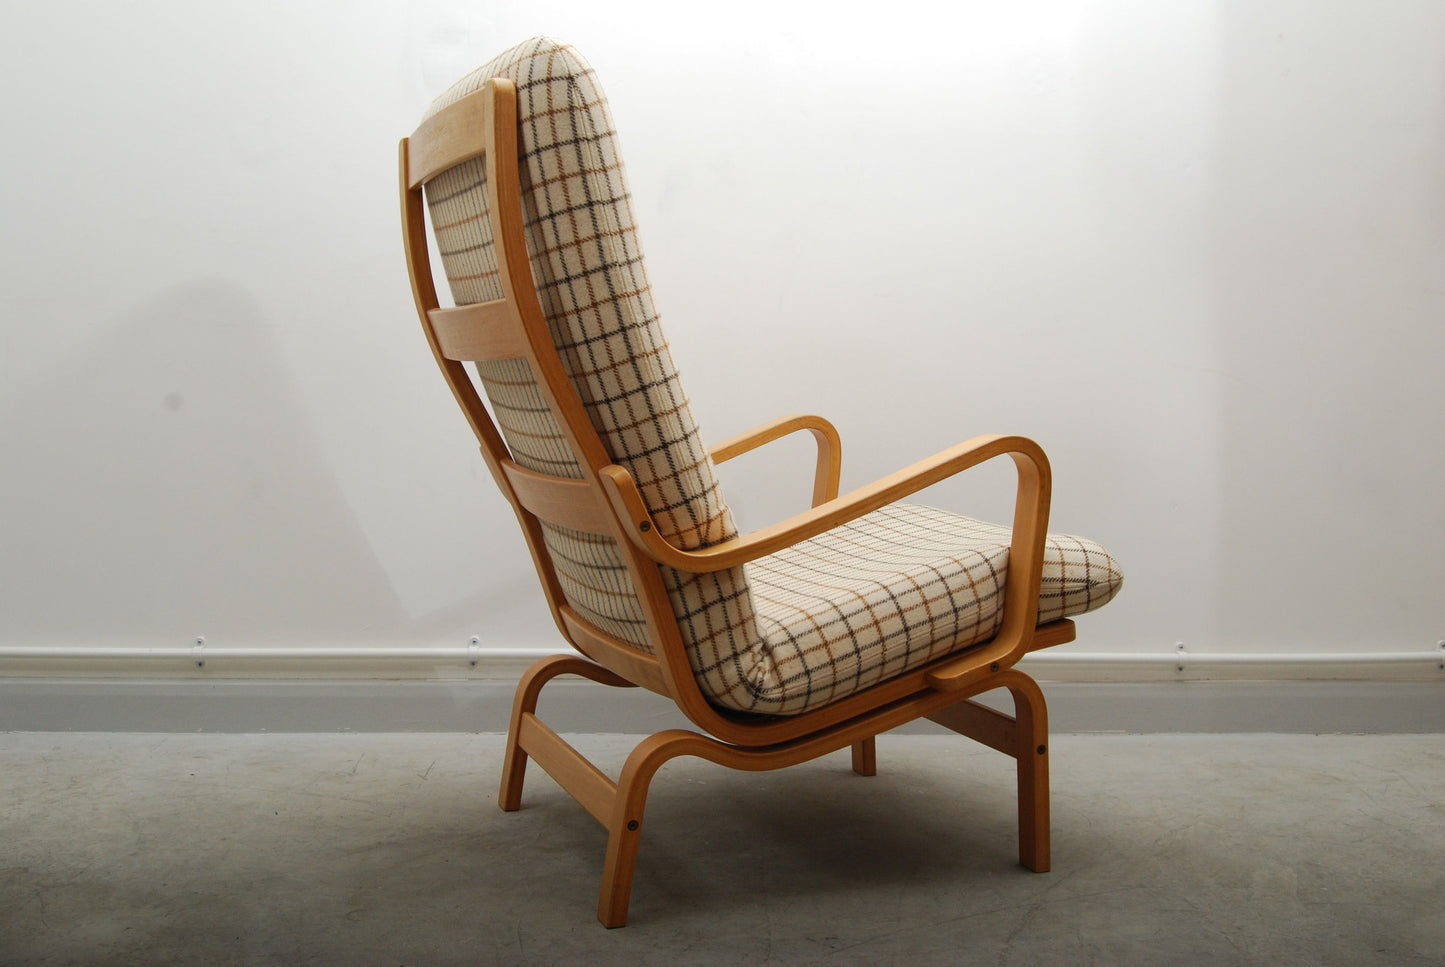 Lounge chair by Yngve Ekstr̦m